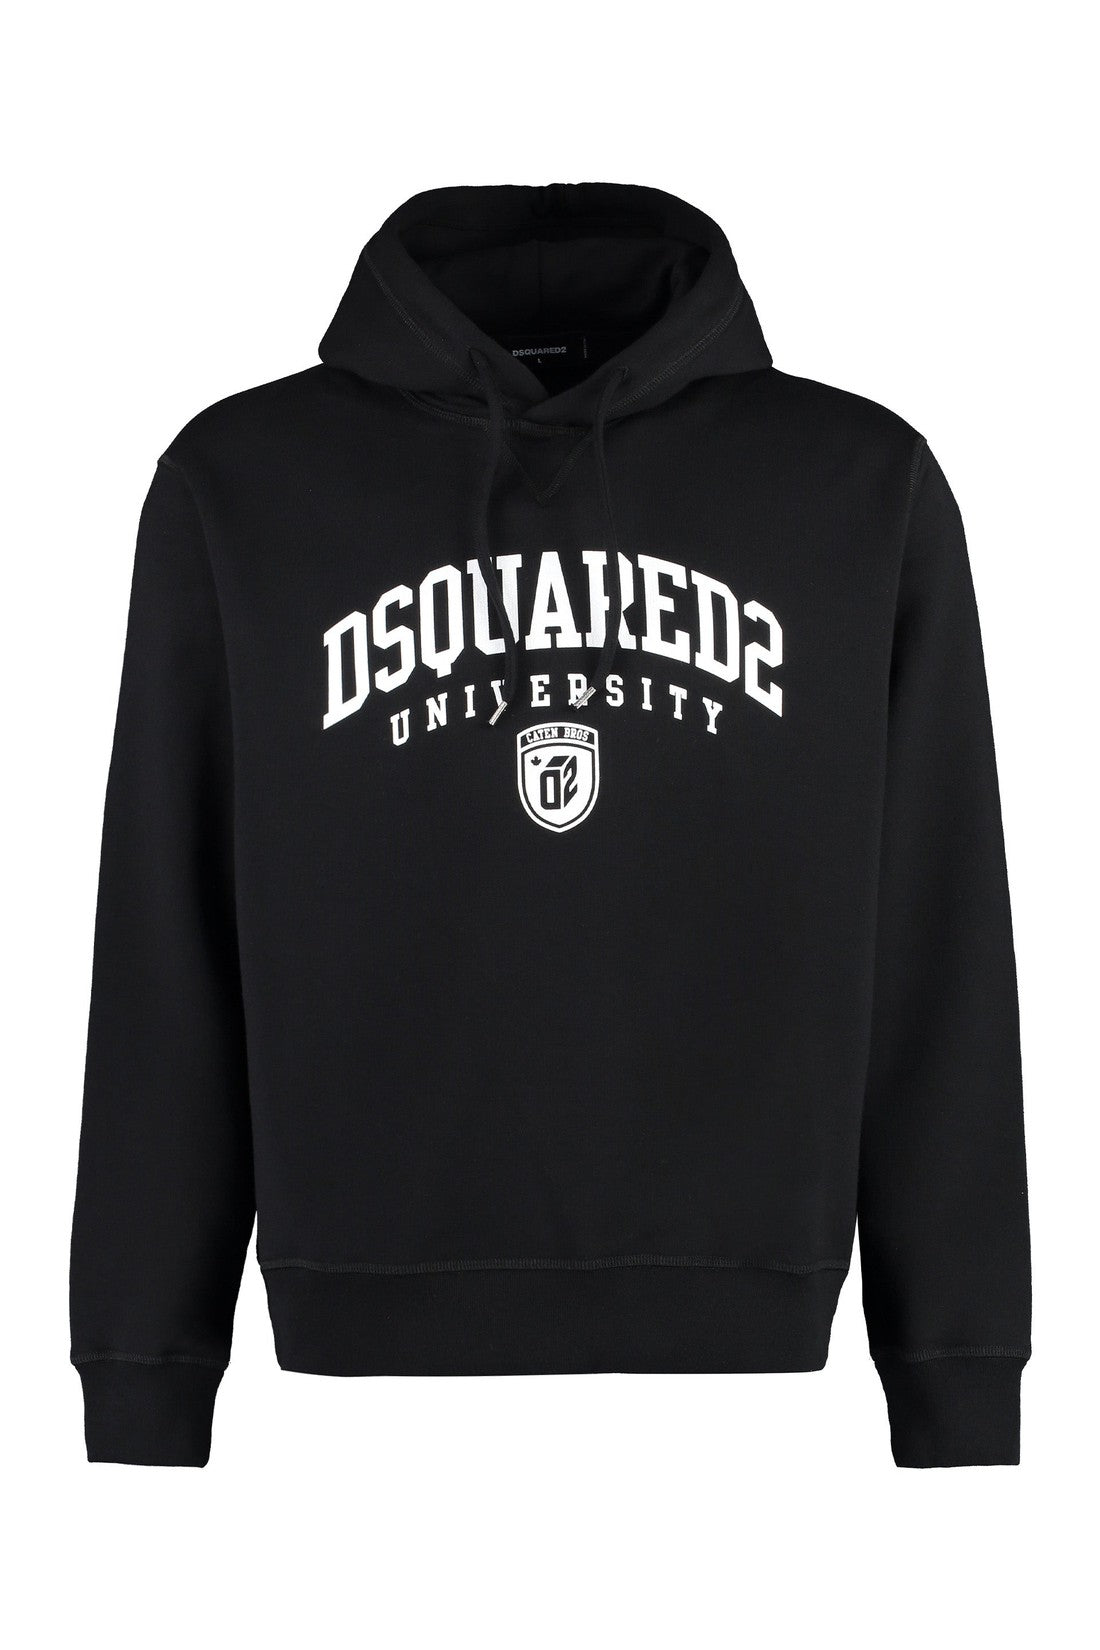 Dsquared2-OUTLET-SALE-Cotton hoodie-ARCHIVIST